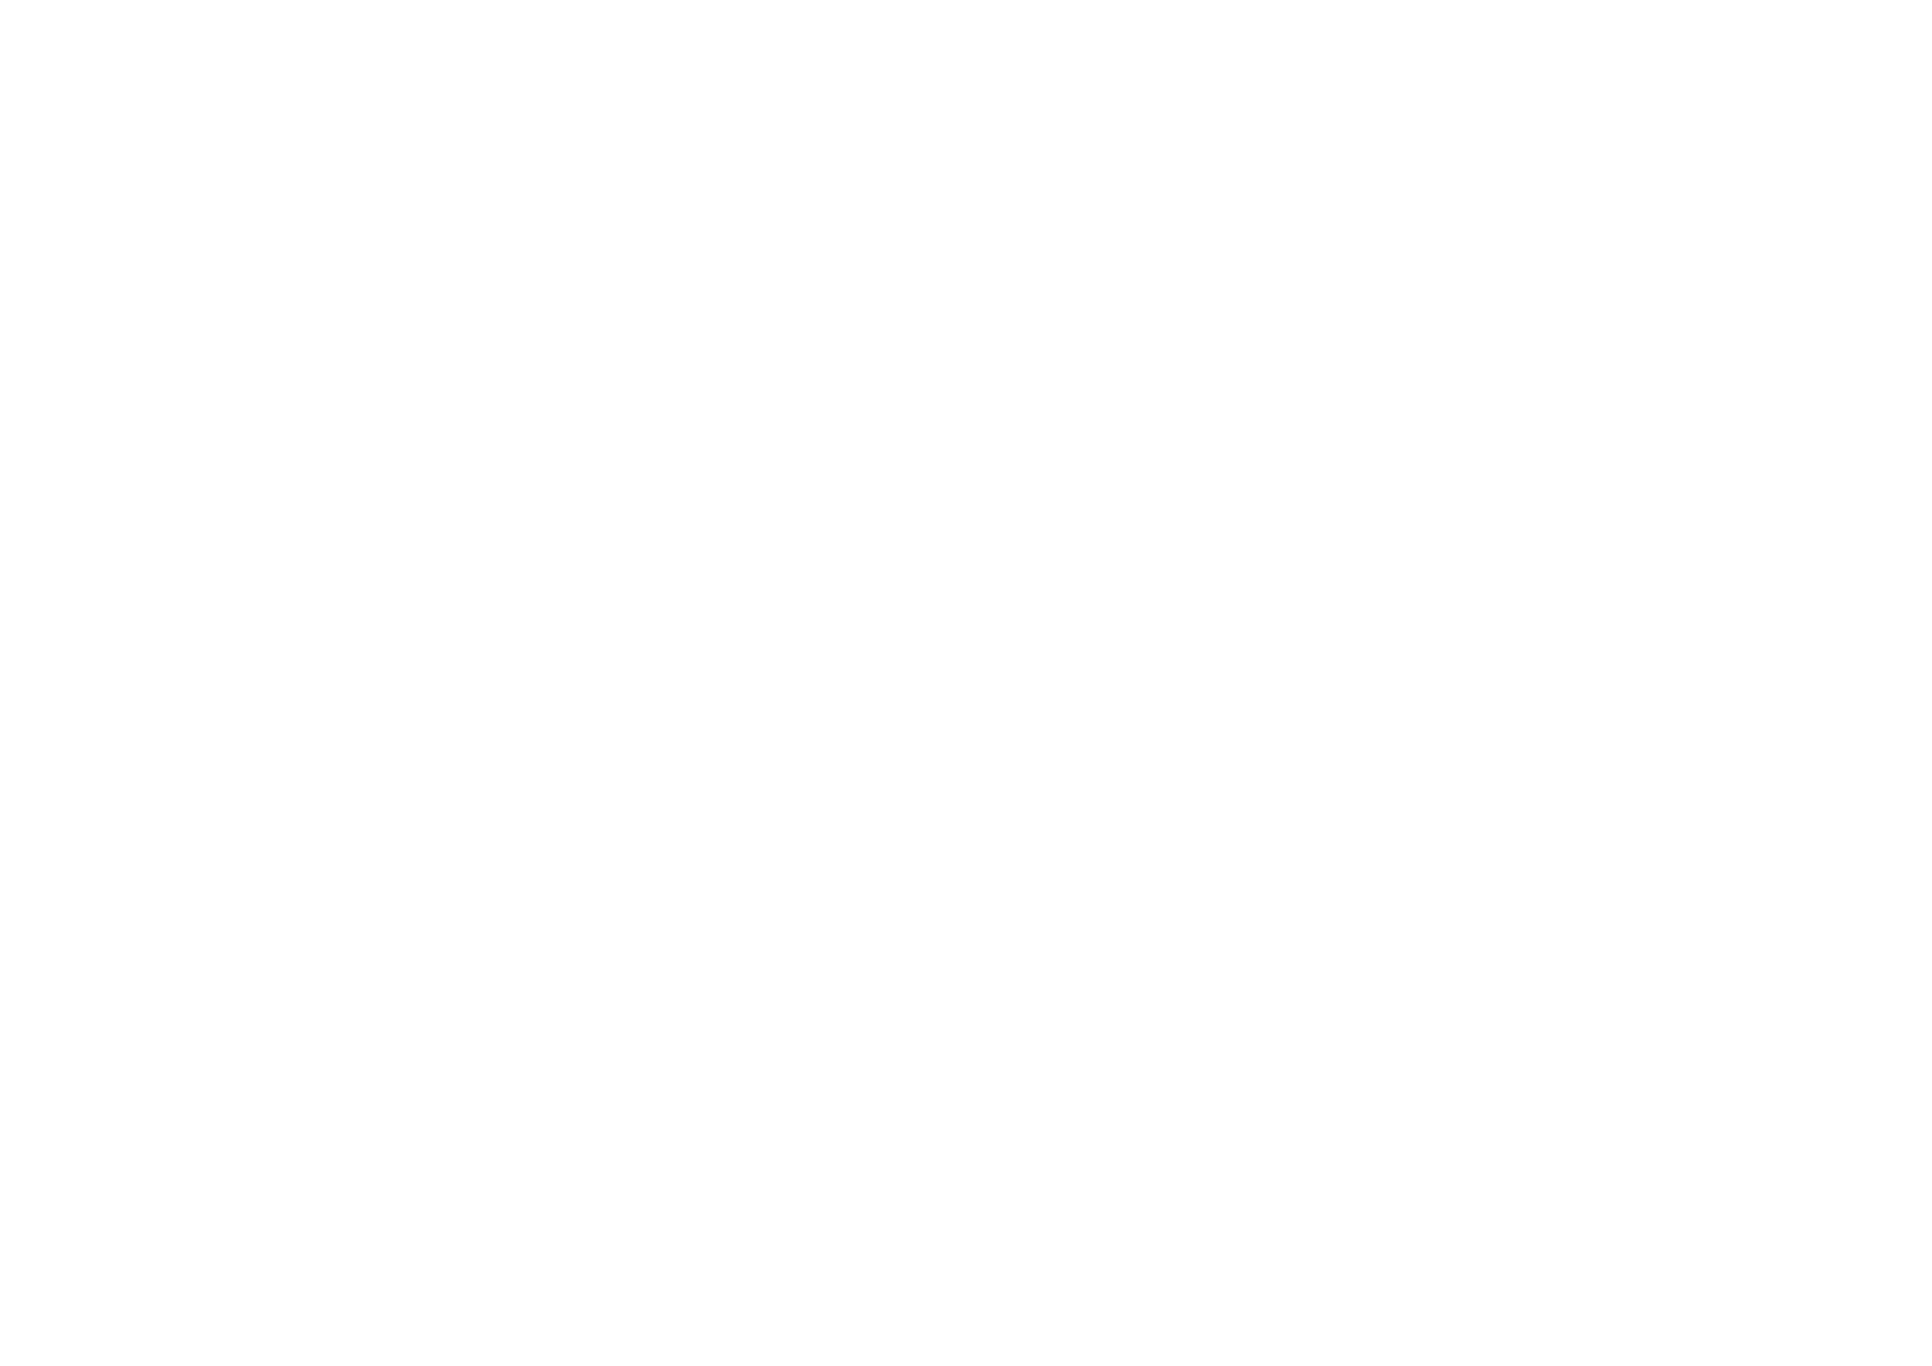 Seiko depuis 1881